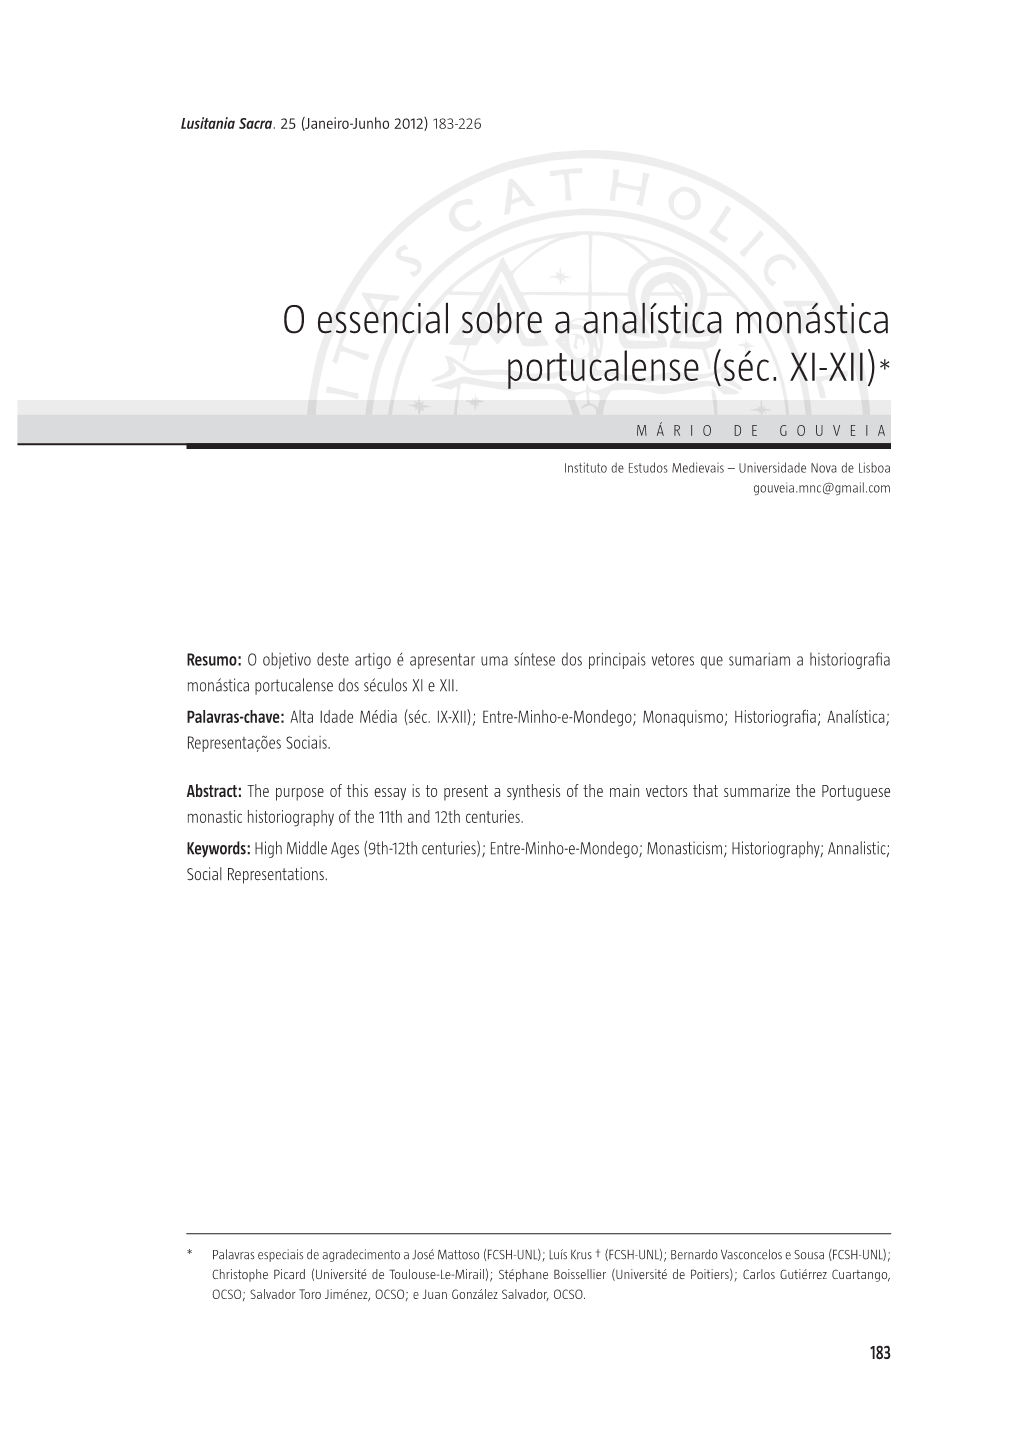 O Essencial Sobre a Analística Monástica Portucalense (Séc . XI ‑XII)*